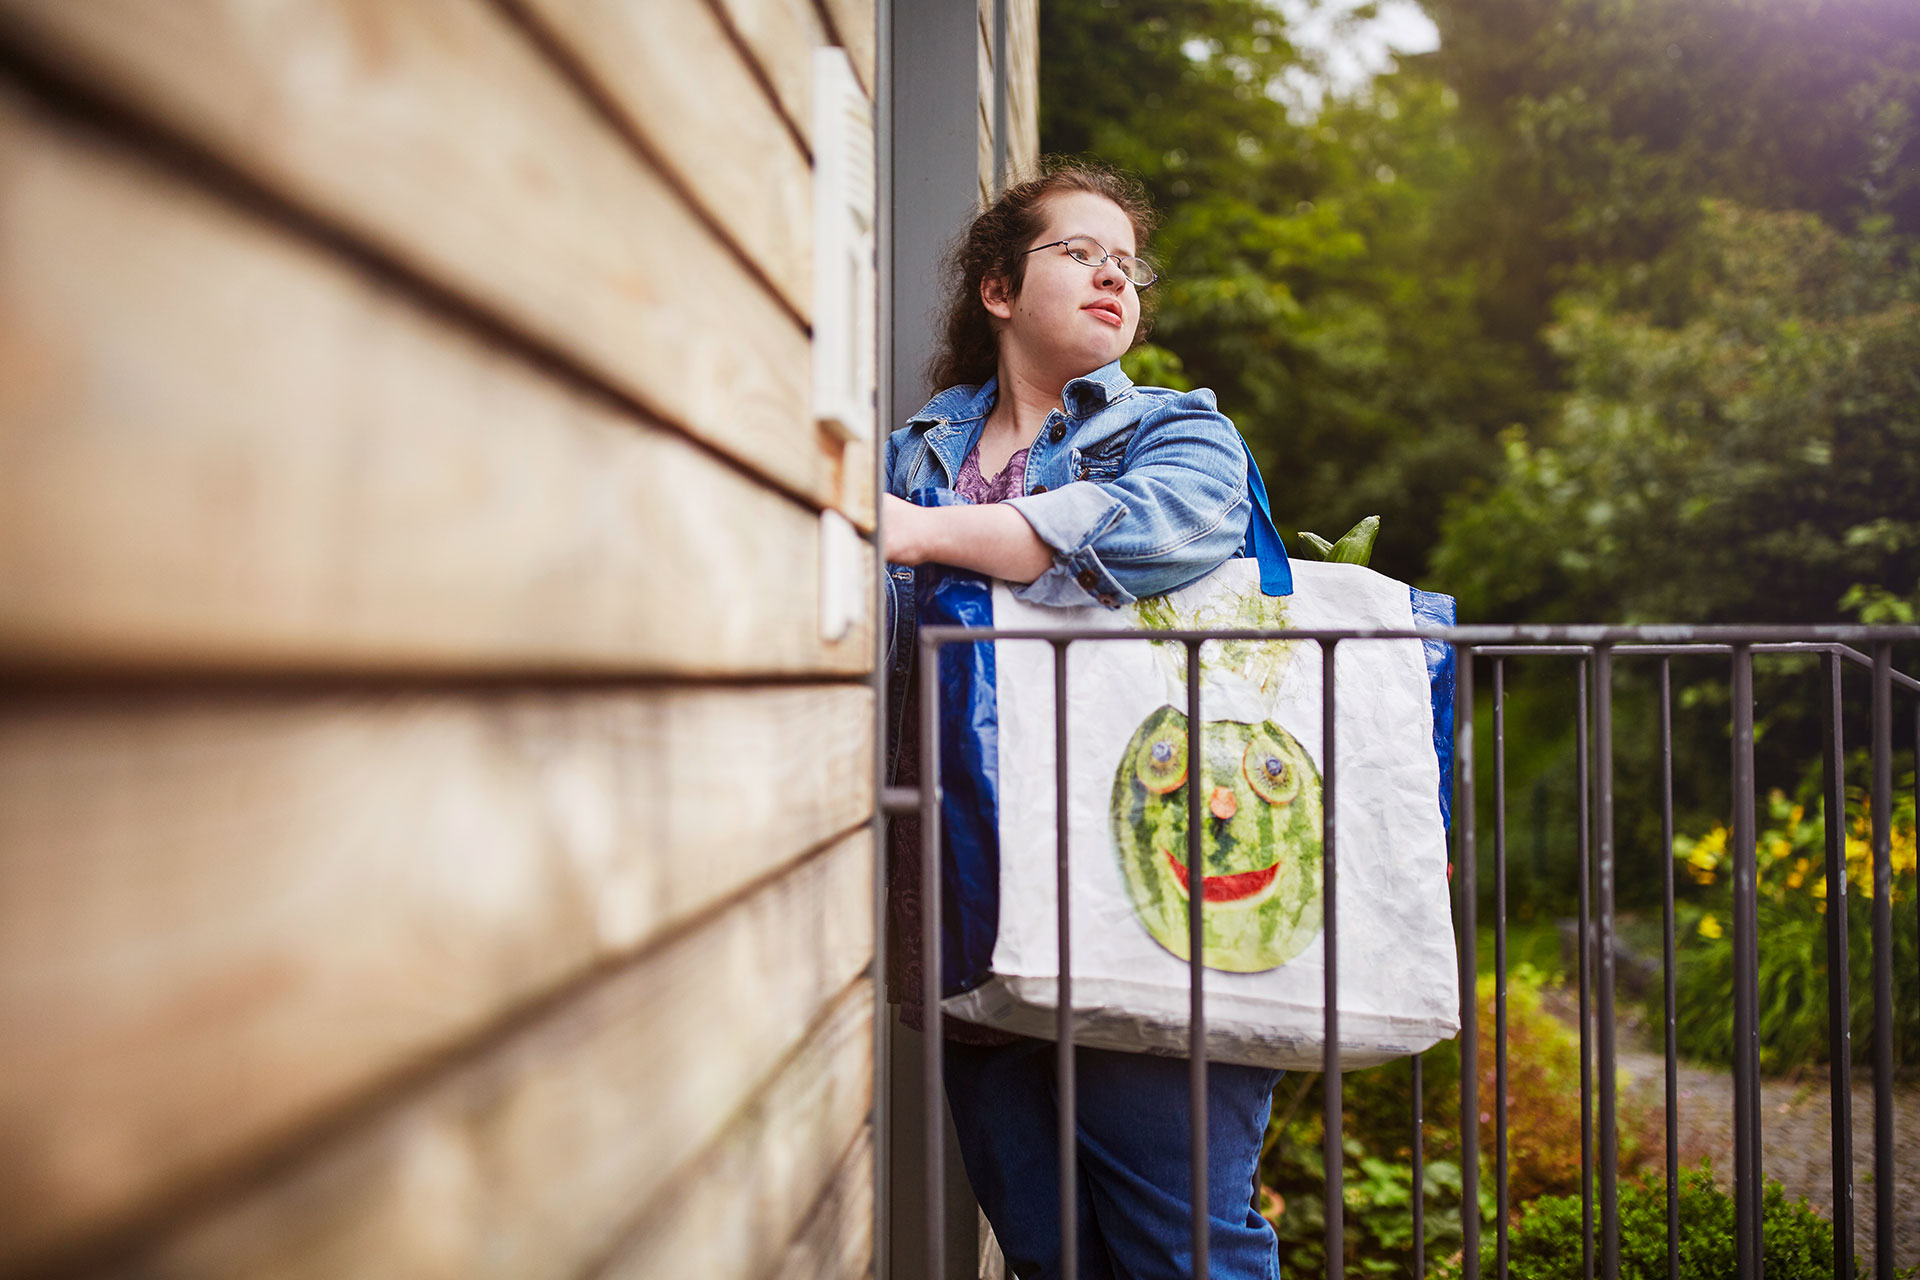 Im Bild: Eine Junge Frau steht an der Eingangstür eines Hauses und öffnet die Tür. Sie trägt eine große Tasche mit Lebensmitteln über der Schulter.